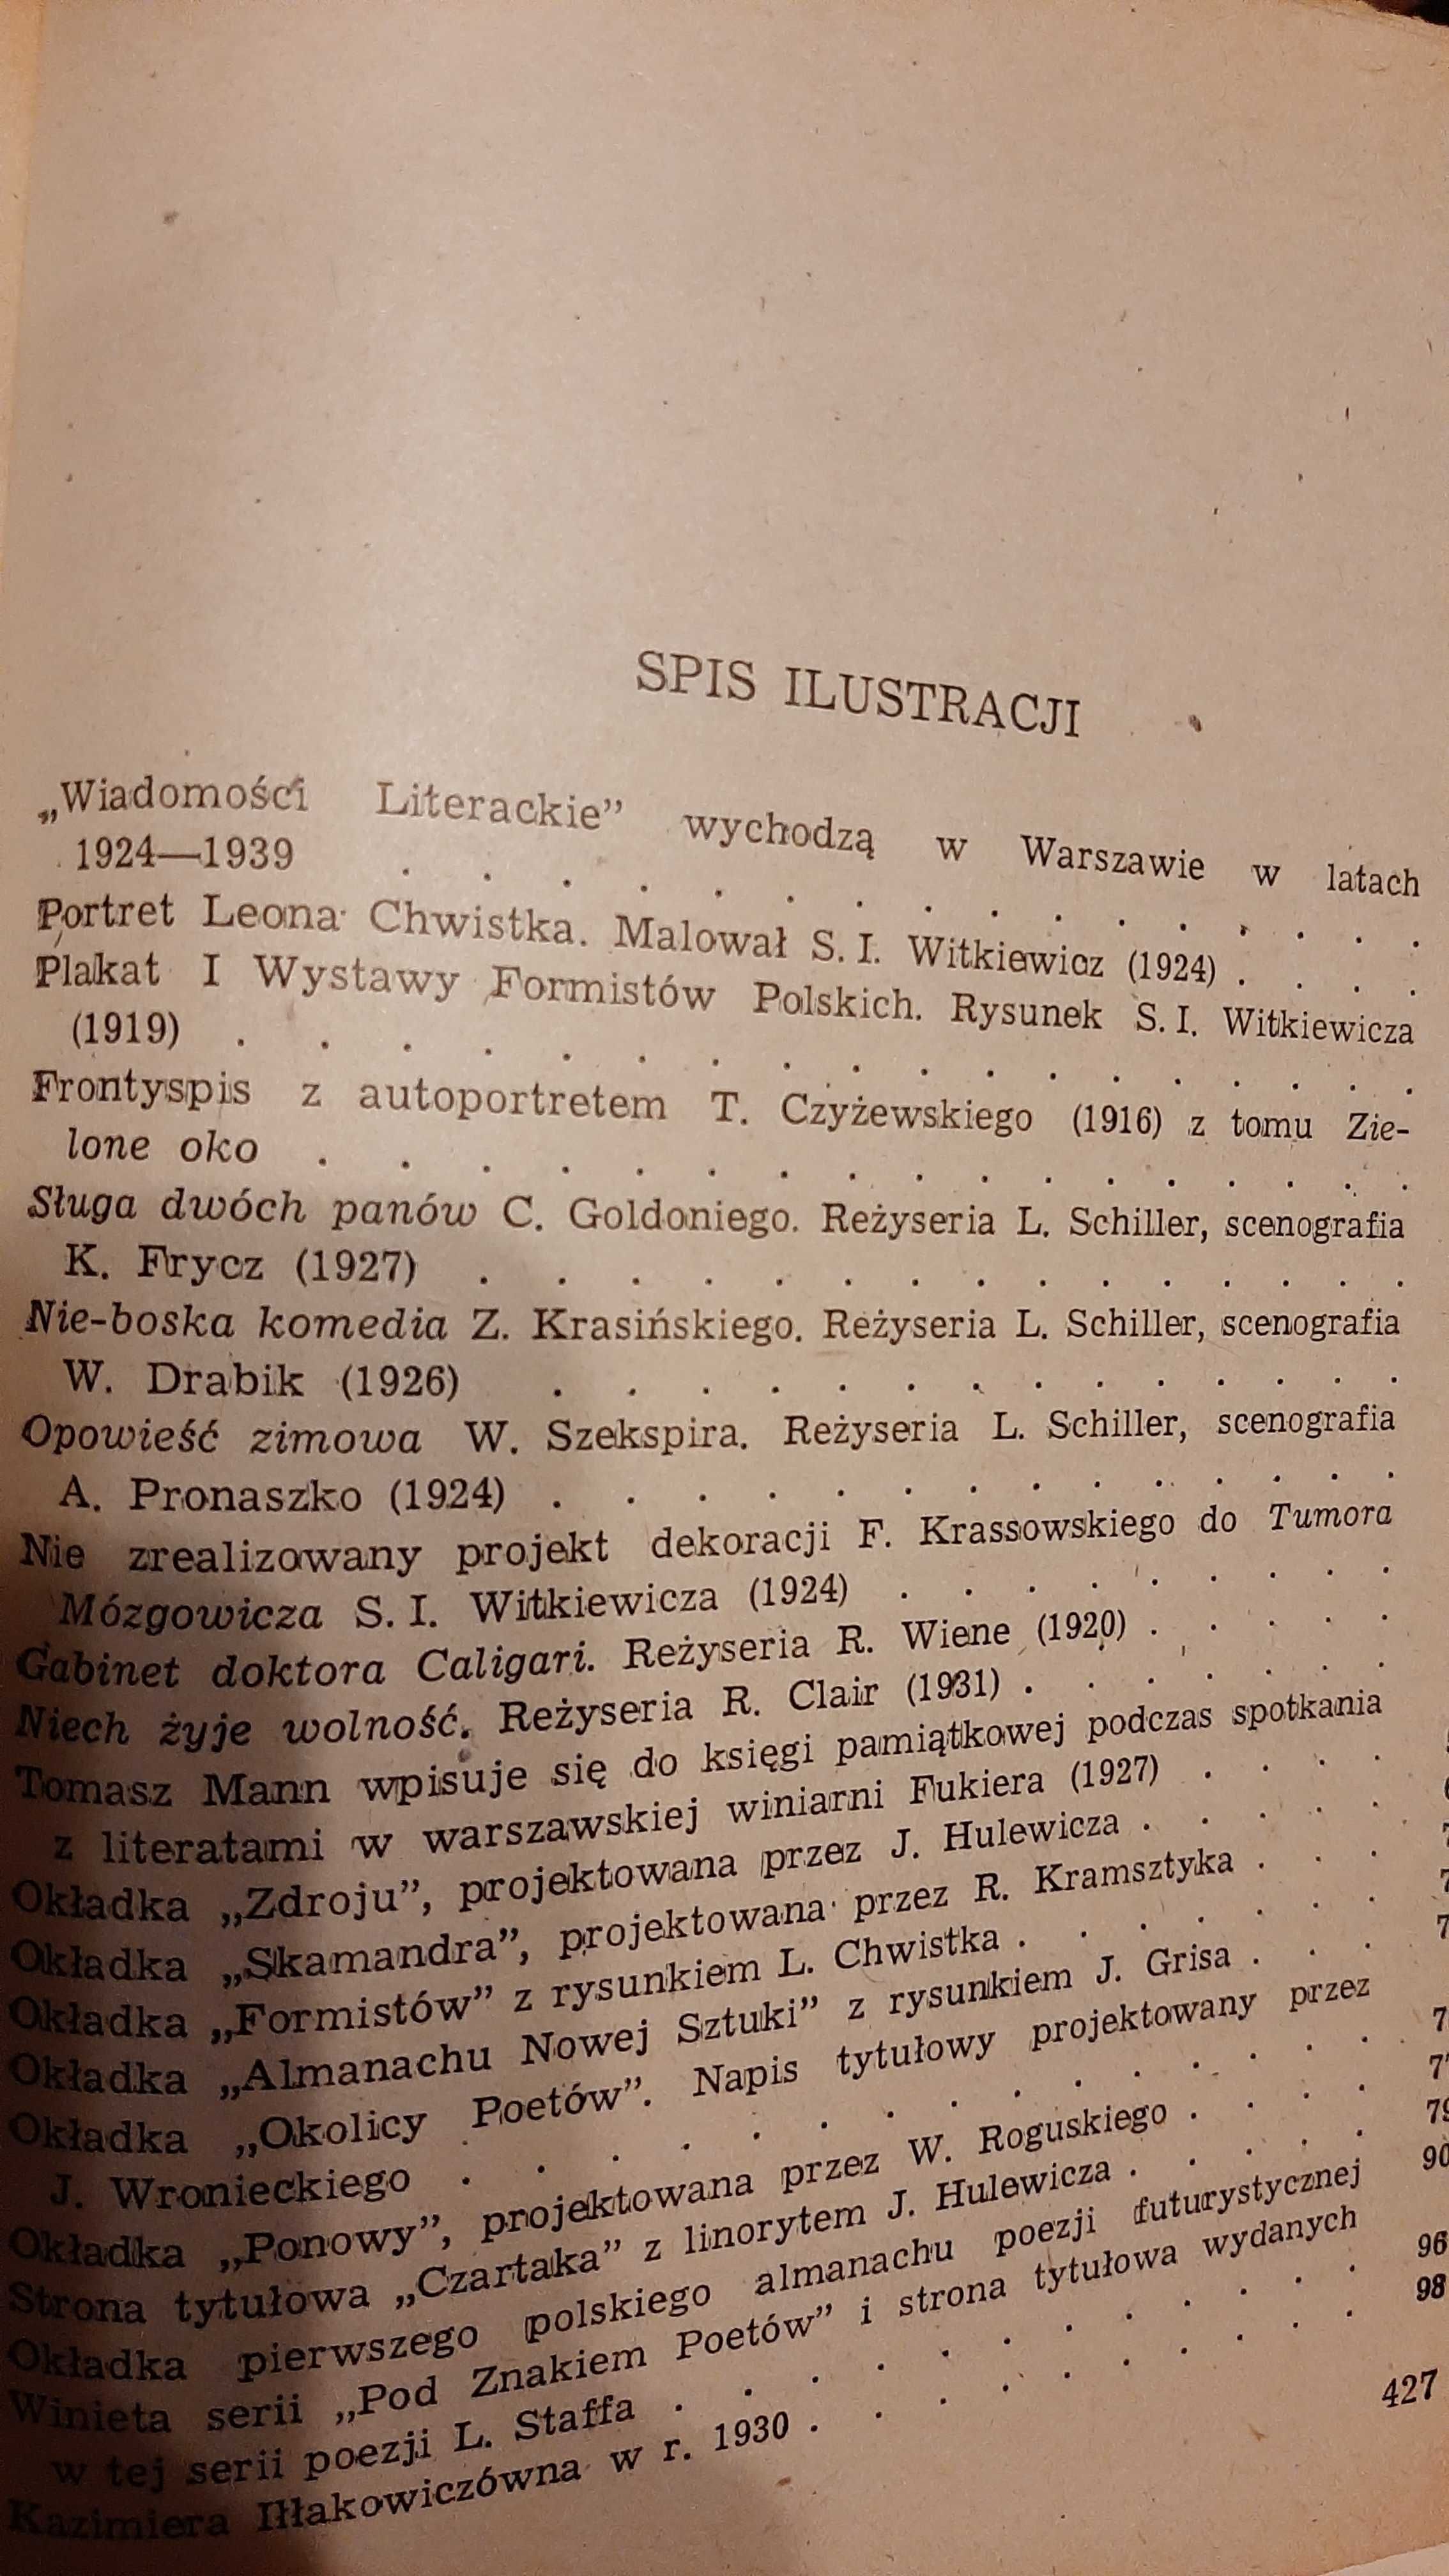 Lesław Eustachiewicz Dwudziestolecie 1919 -1939 międzywojenne historia